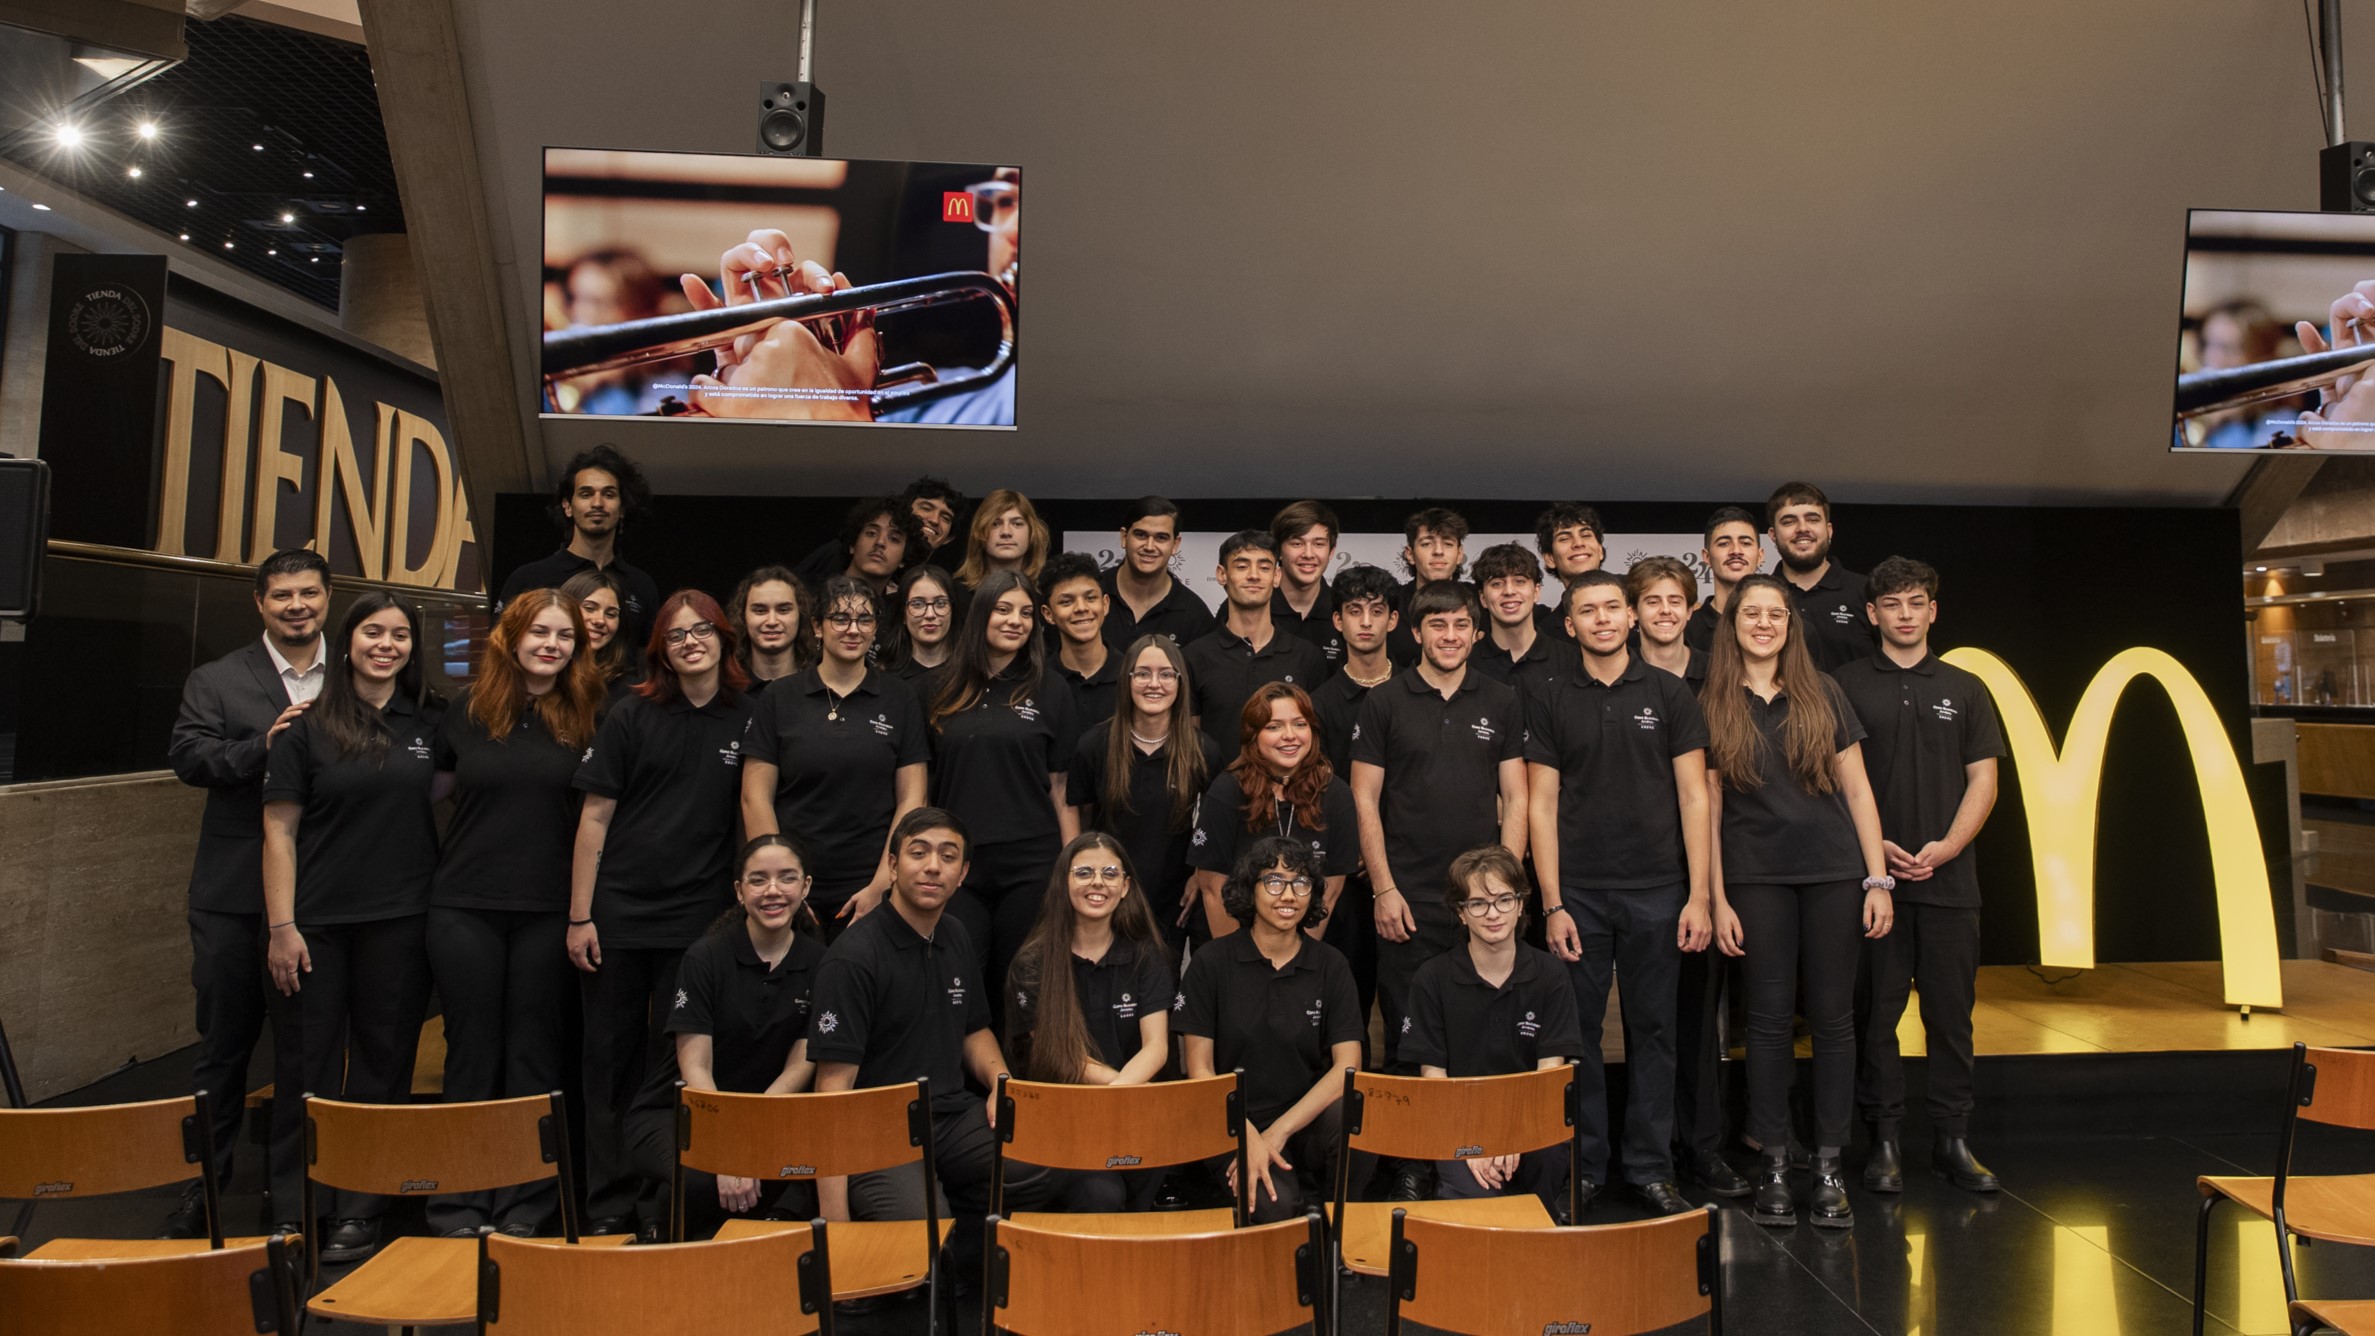 Protegido: En Uruguay lanzamos el programa “Ópera Prima” para impulsar la inserción laboral de jóvenes músicos